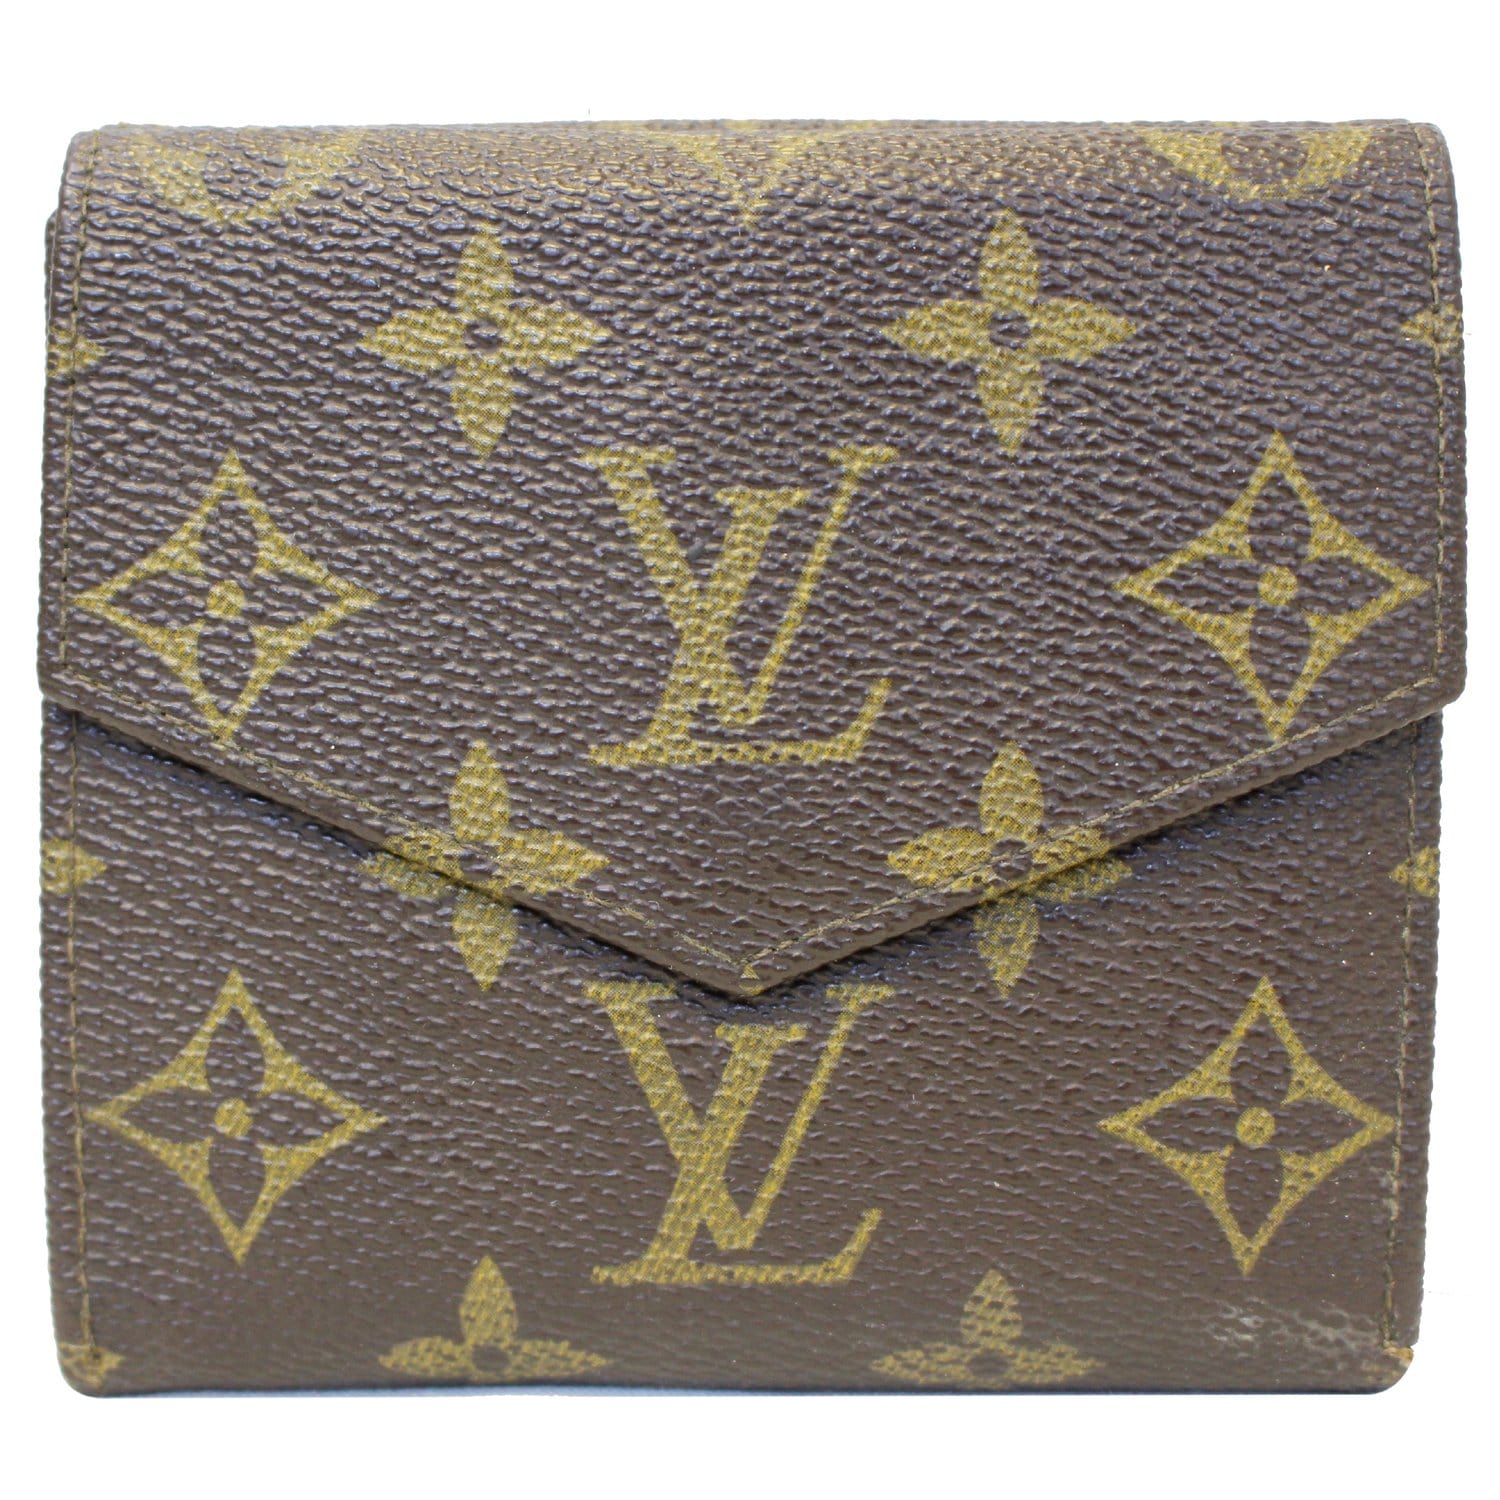 Louis Vuitton CL√âMENCE Wallet, Beige, One Size